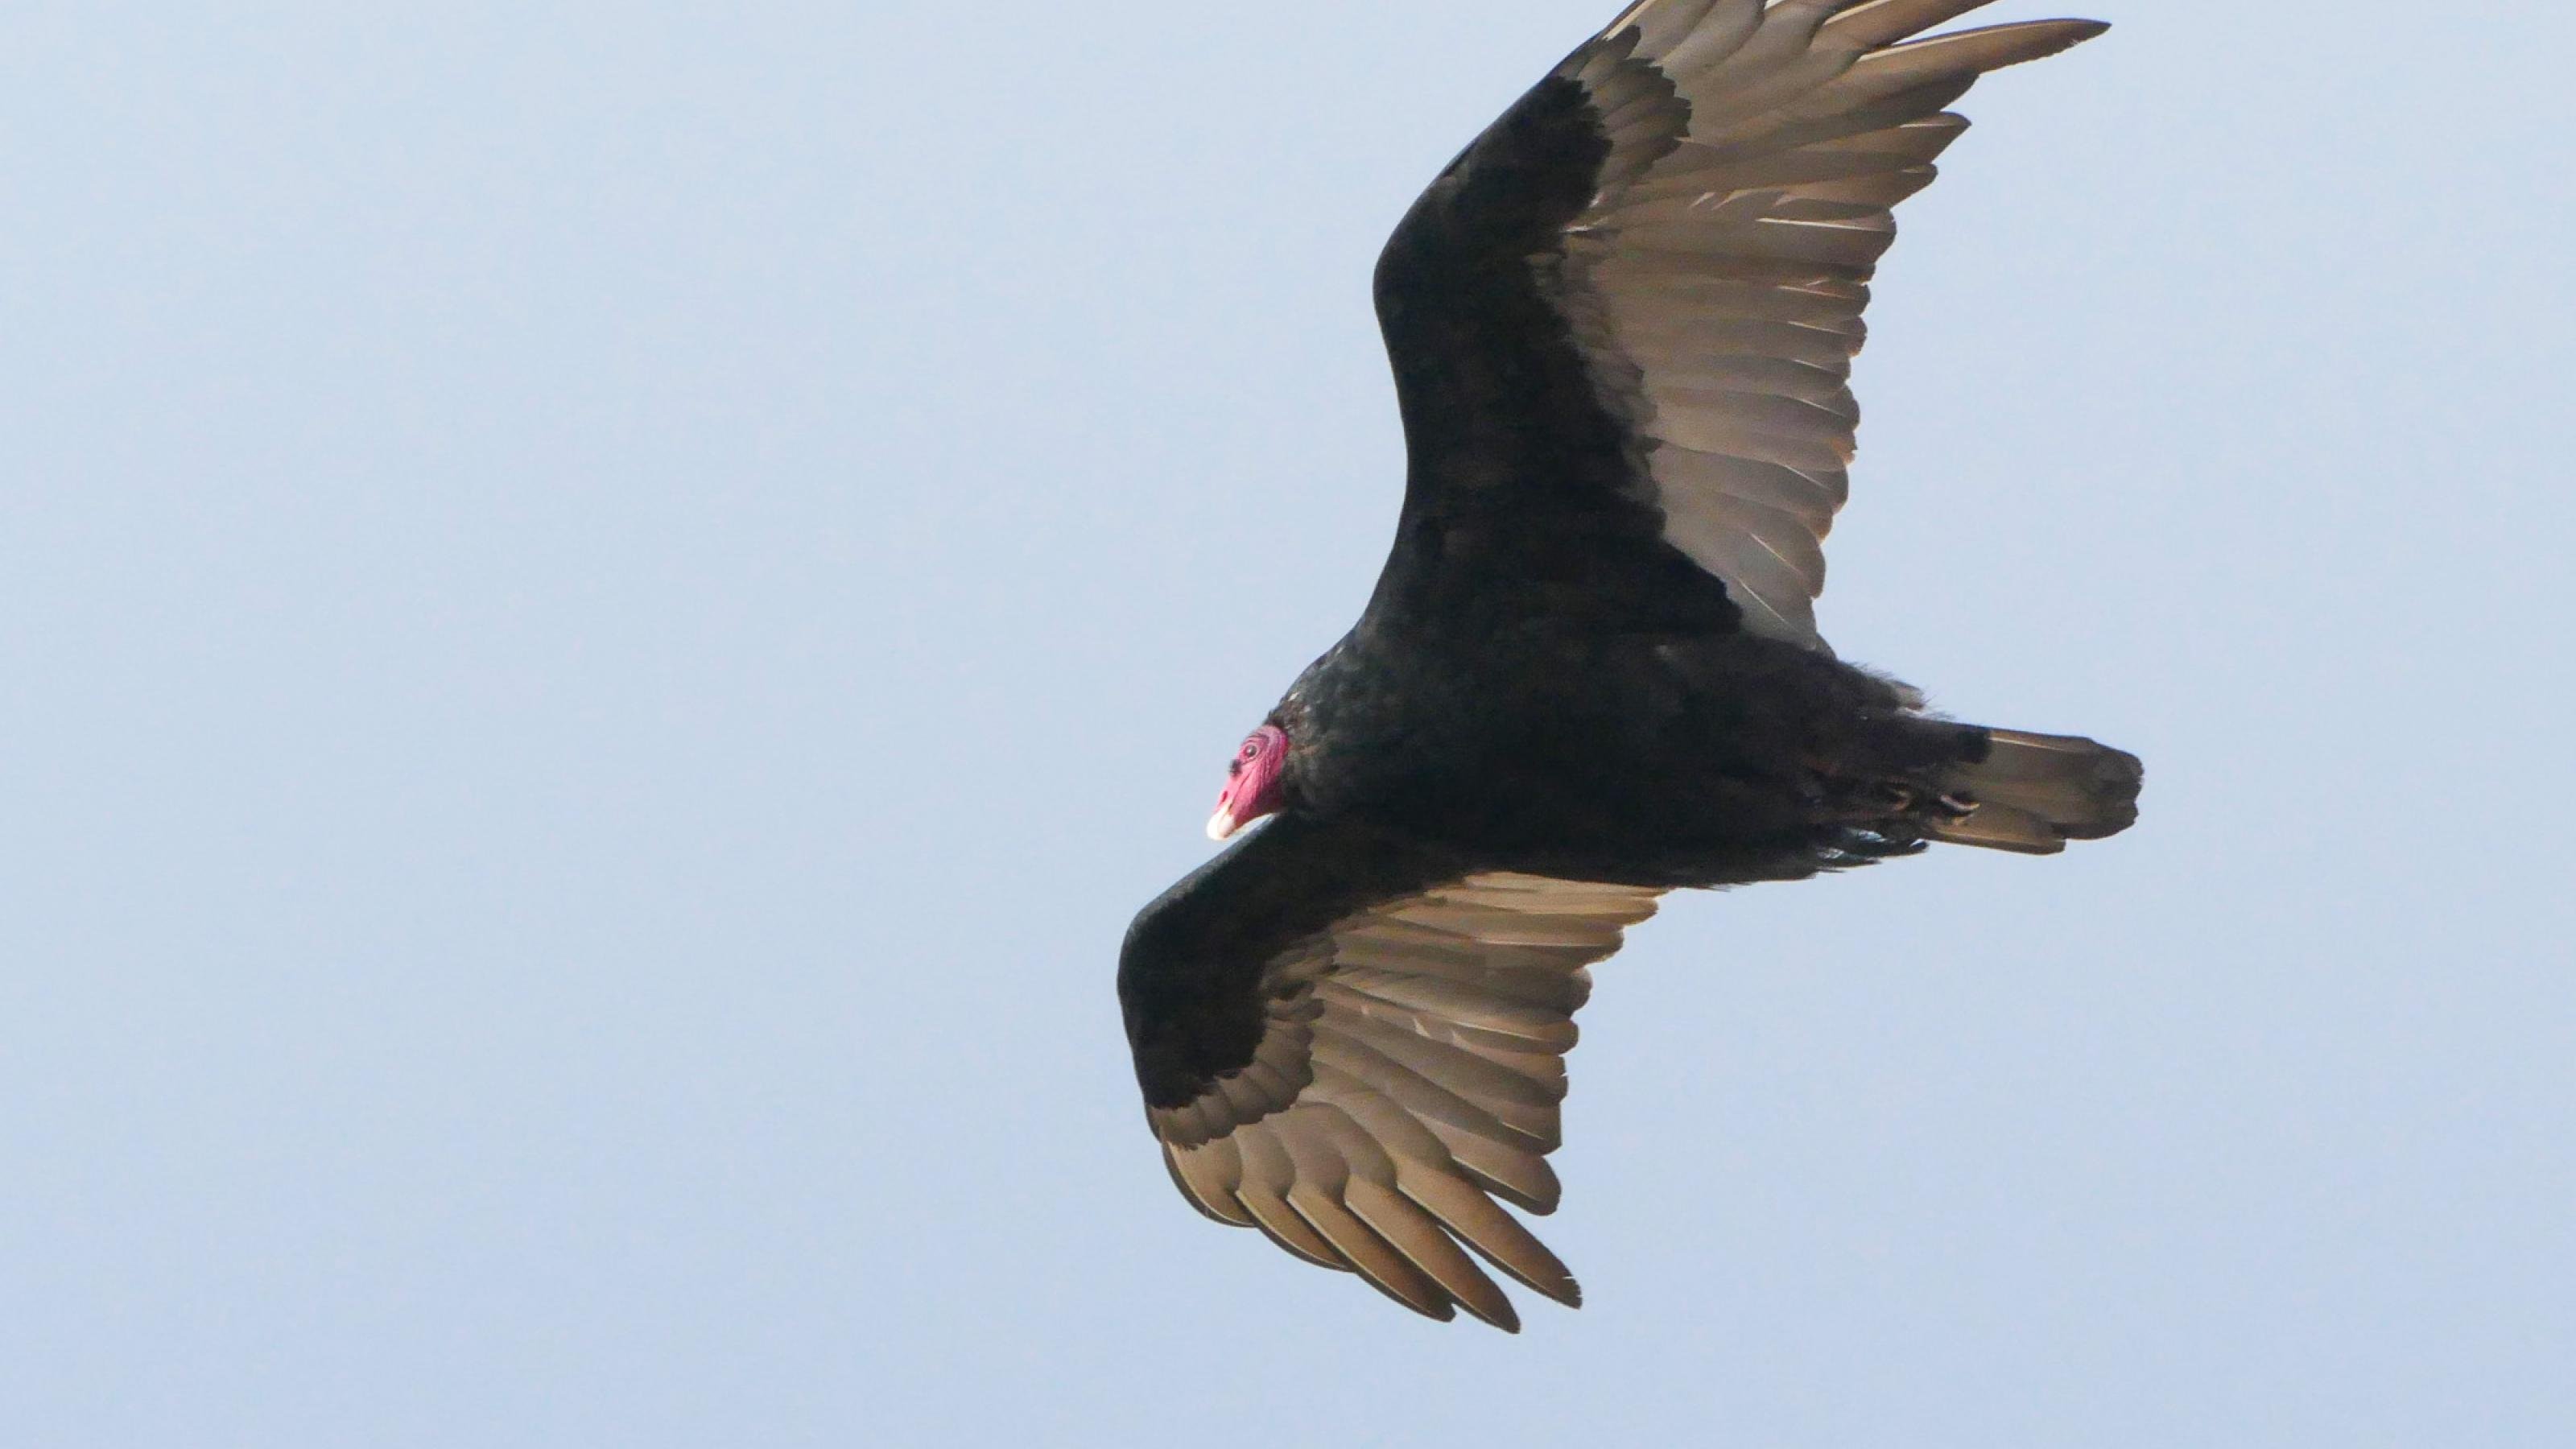 Ein großer schwarzer Vogel mit kahlem roten Kopf mit ausgebreiteten Flügeln vor hellblauem Himmel. Die hinteren Federn an den Flügeln und am Schwanz sind hellgrau.